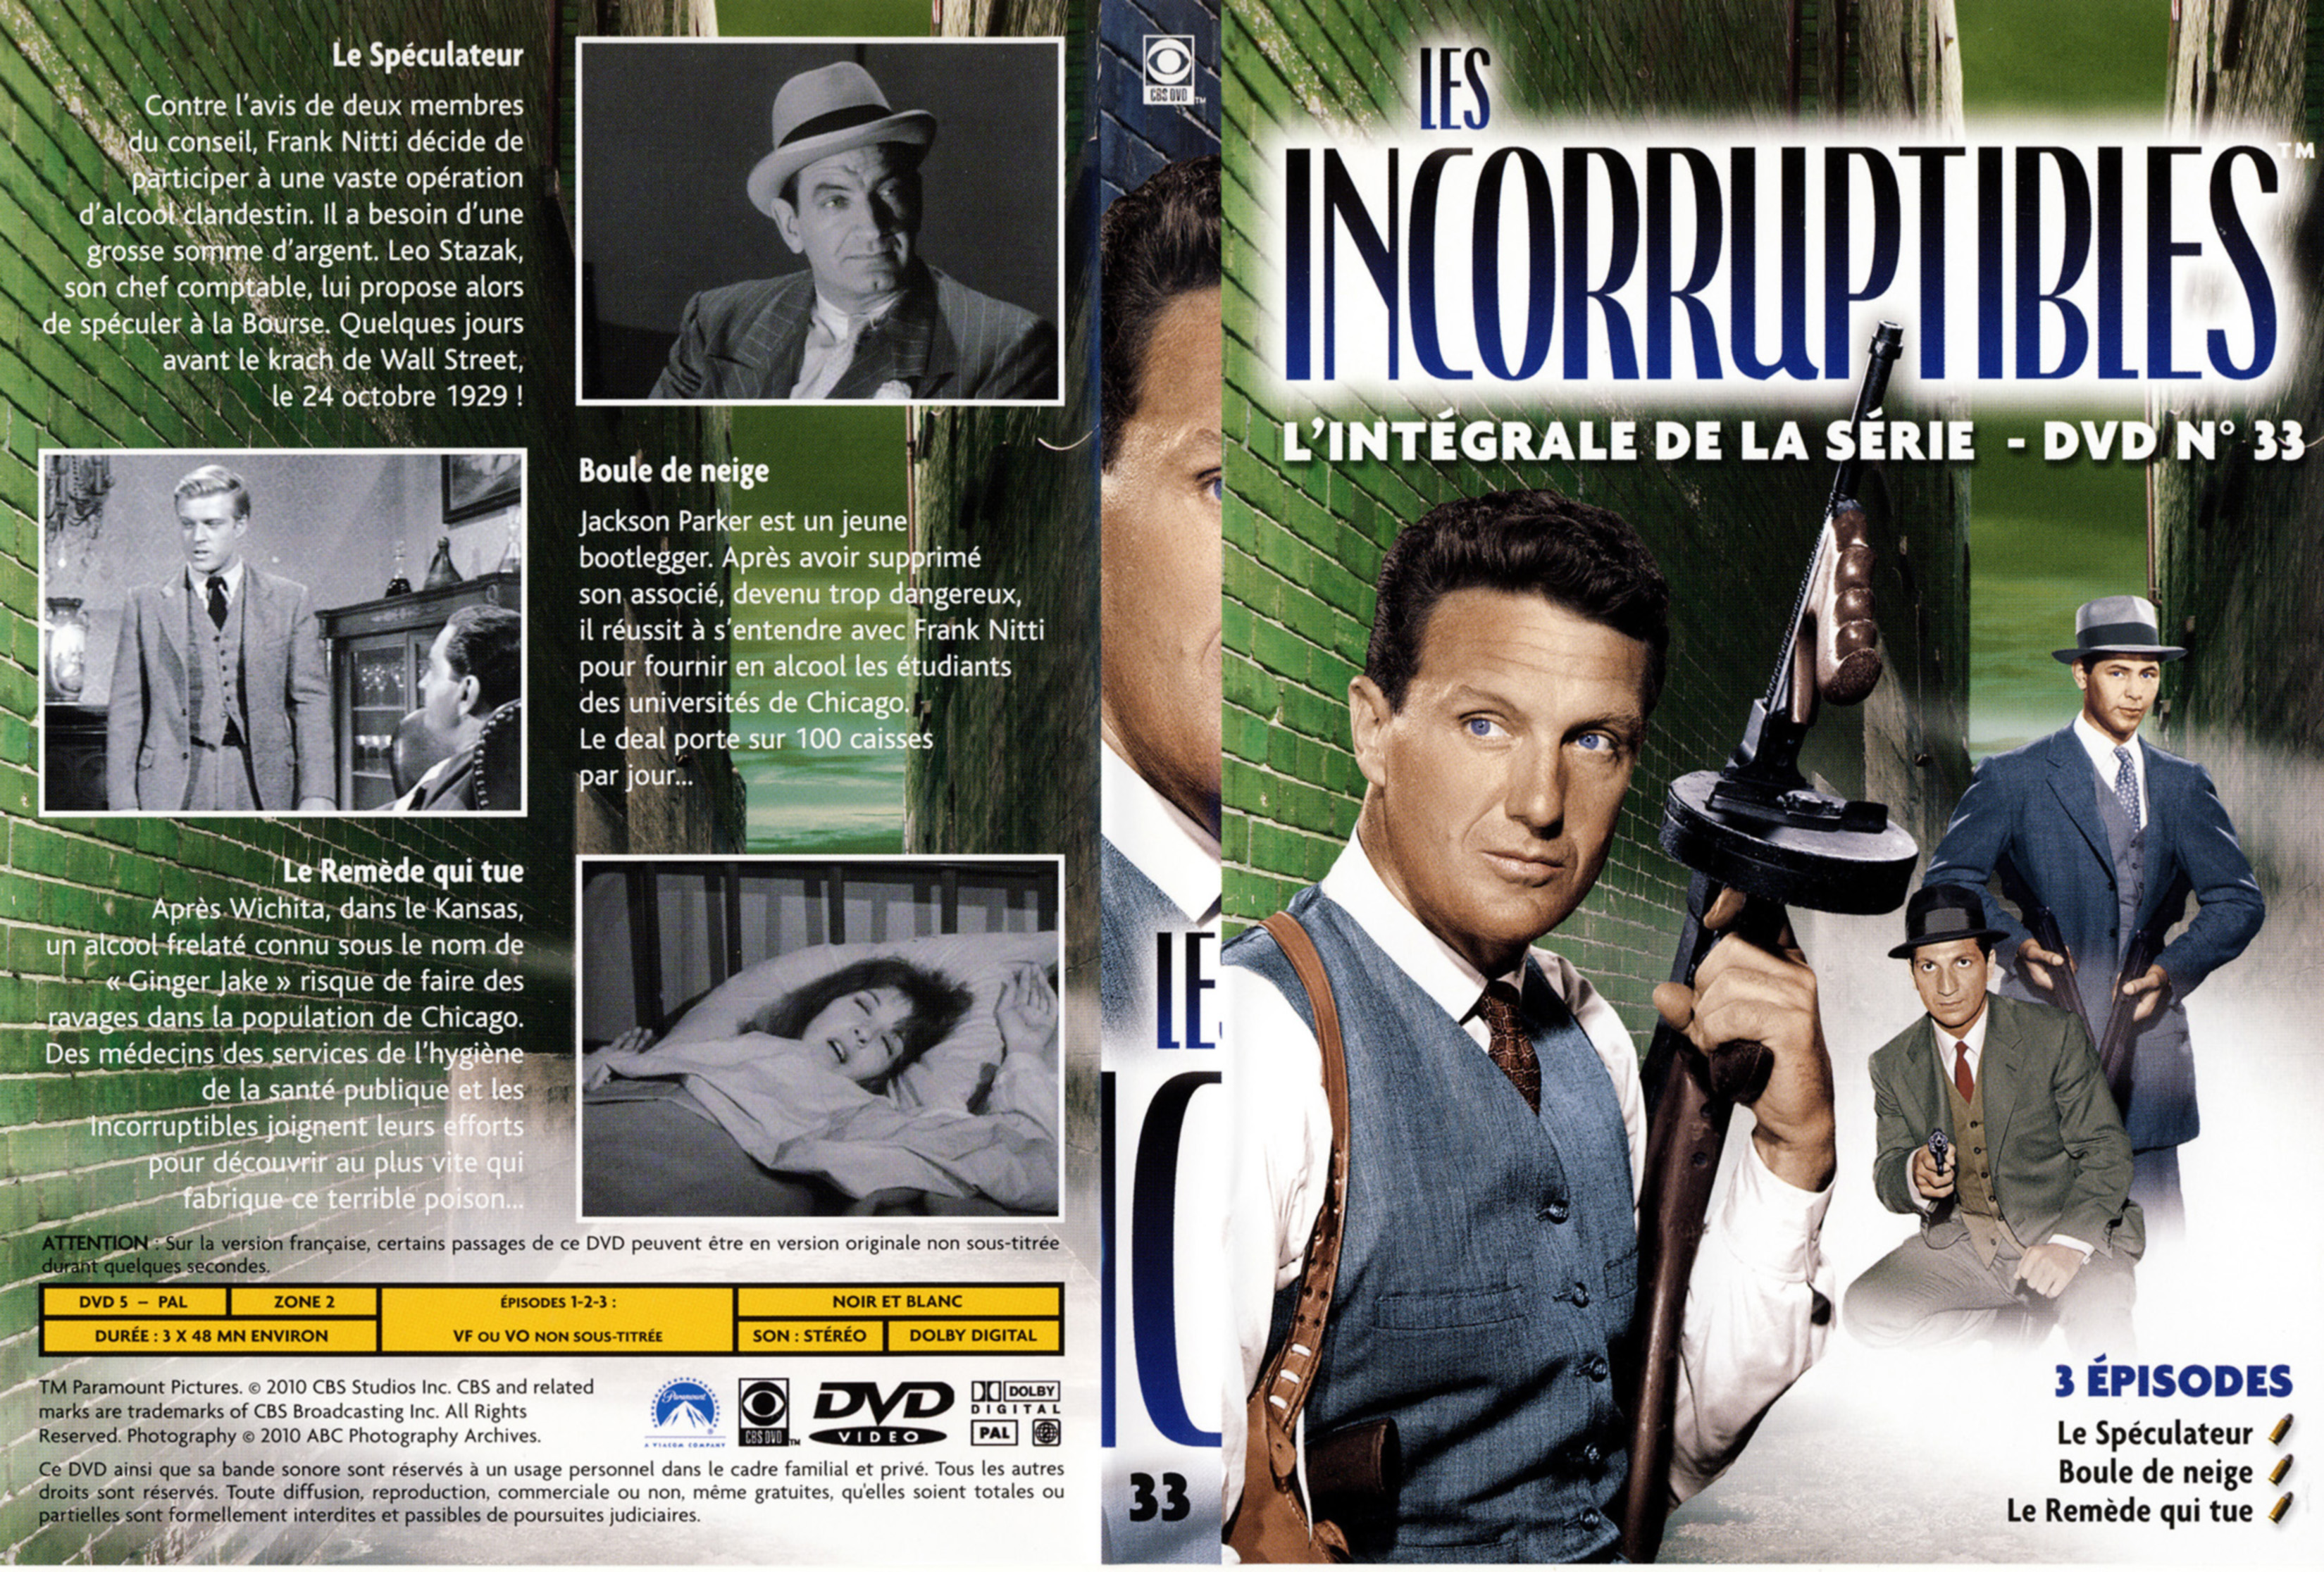 Jaquette DVD Les incorruptibles intgrale DVD 33